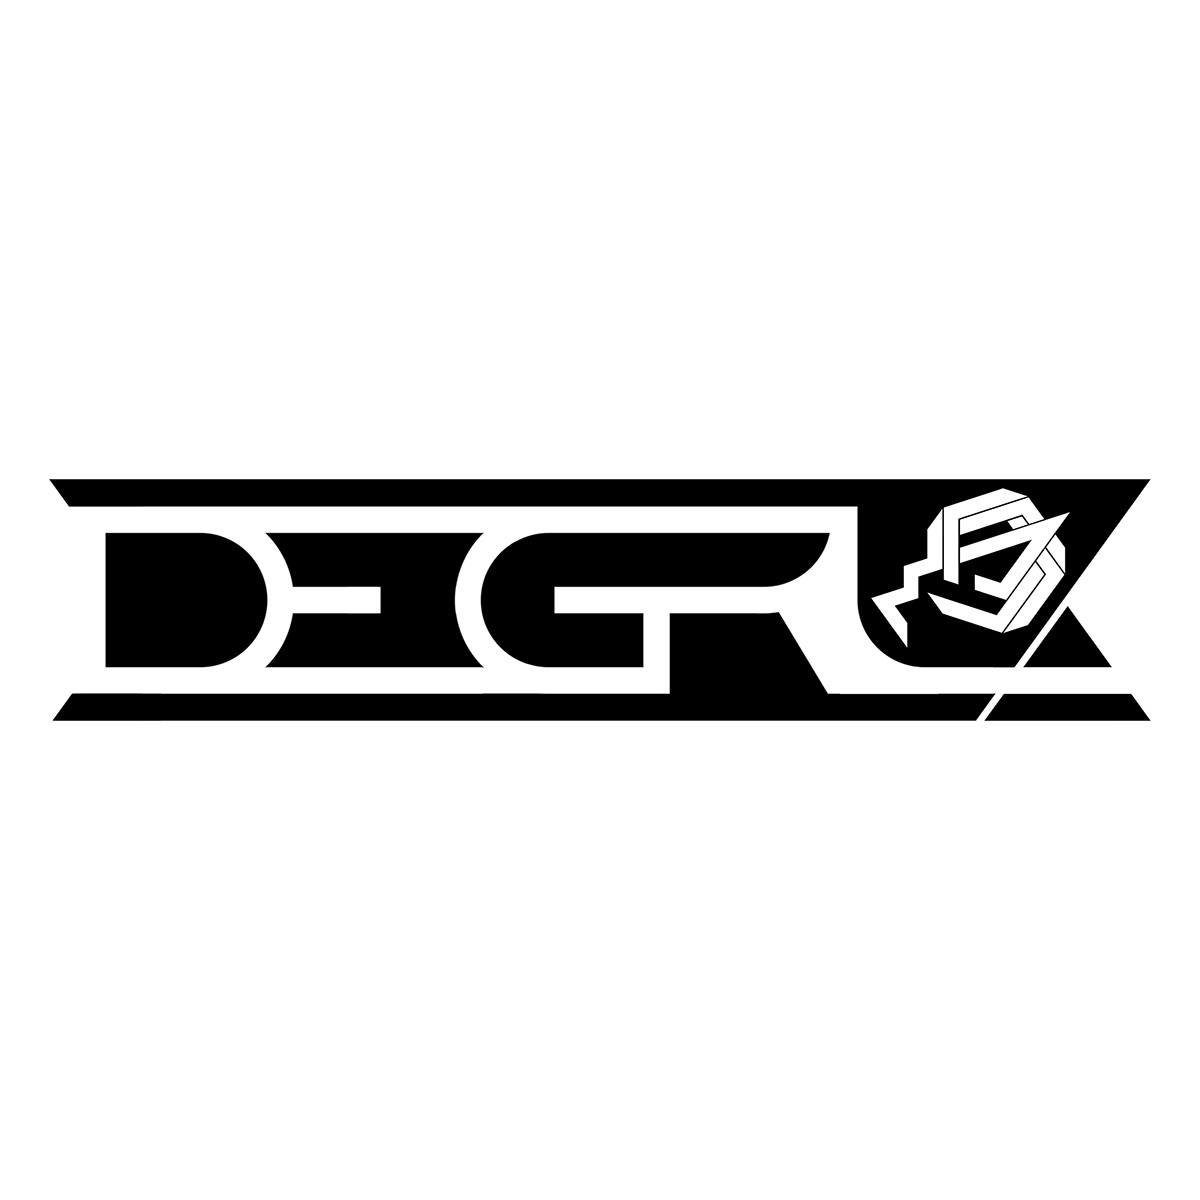 Degrl logo